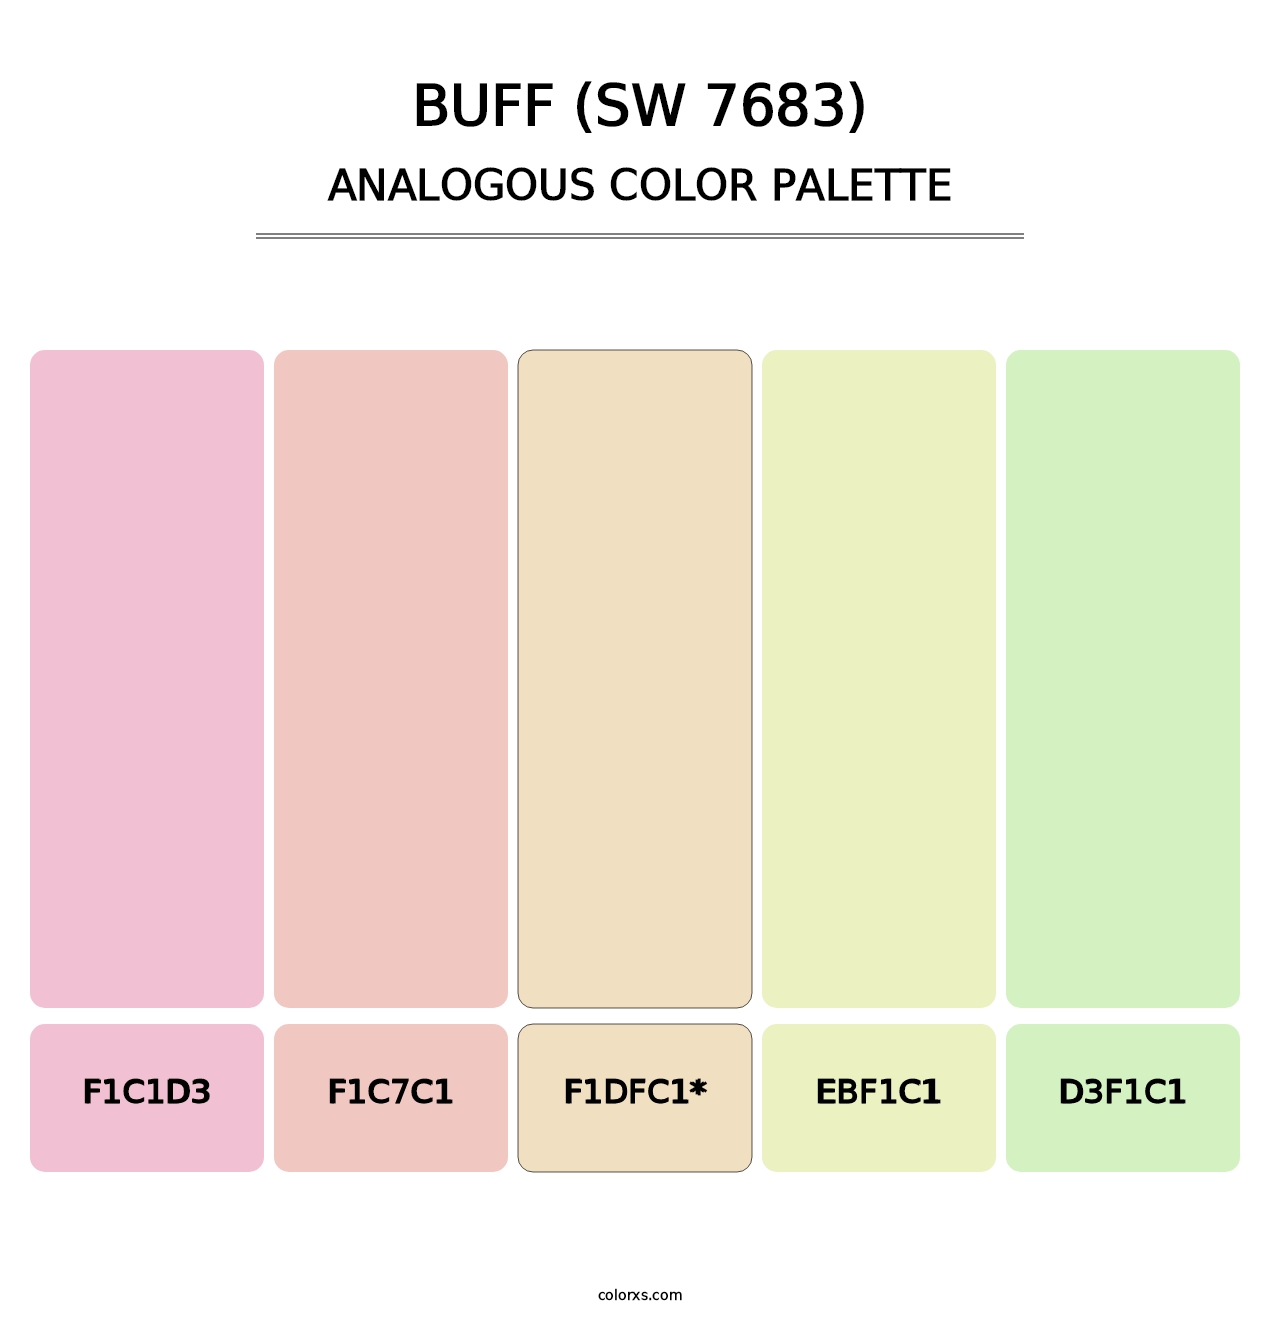 Buff (SW 7683) - Analogous Color Palette